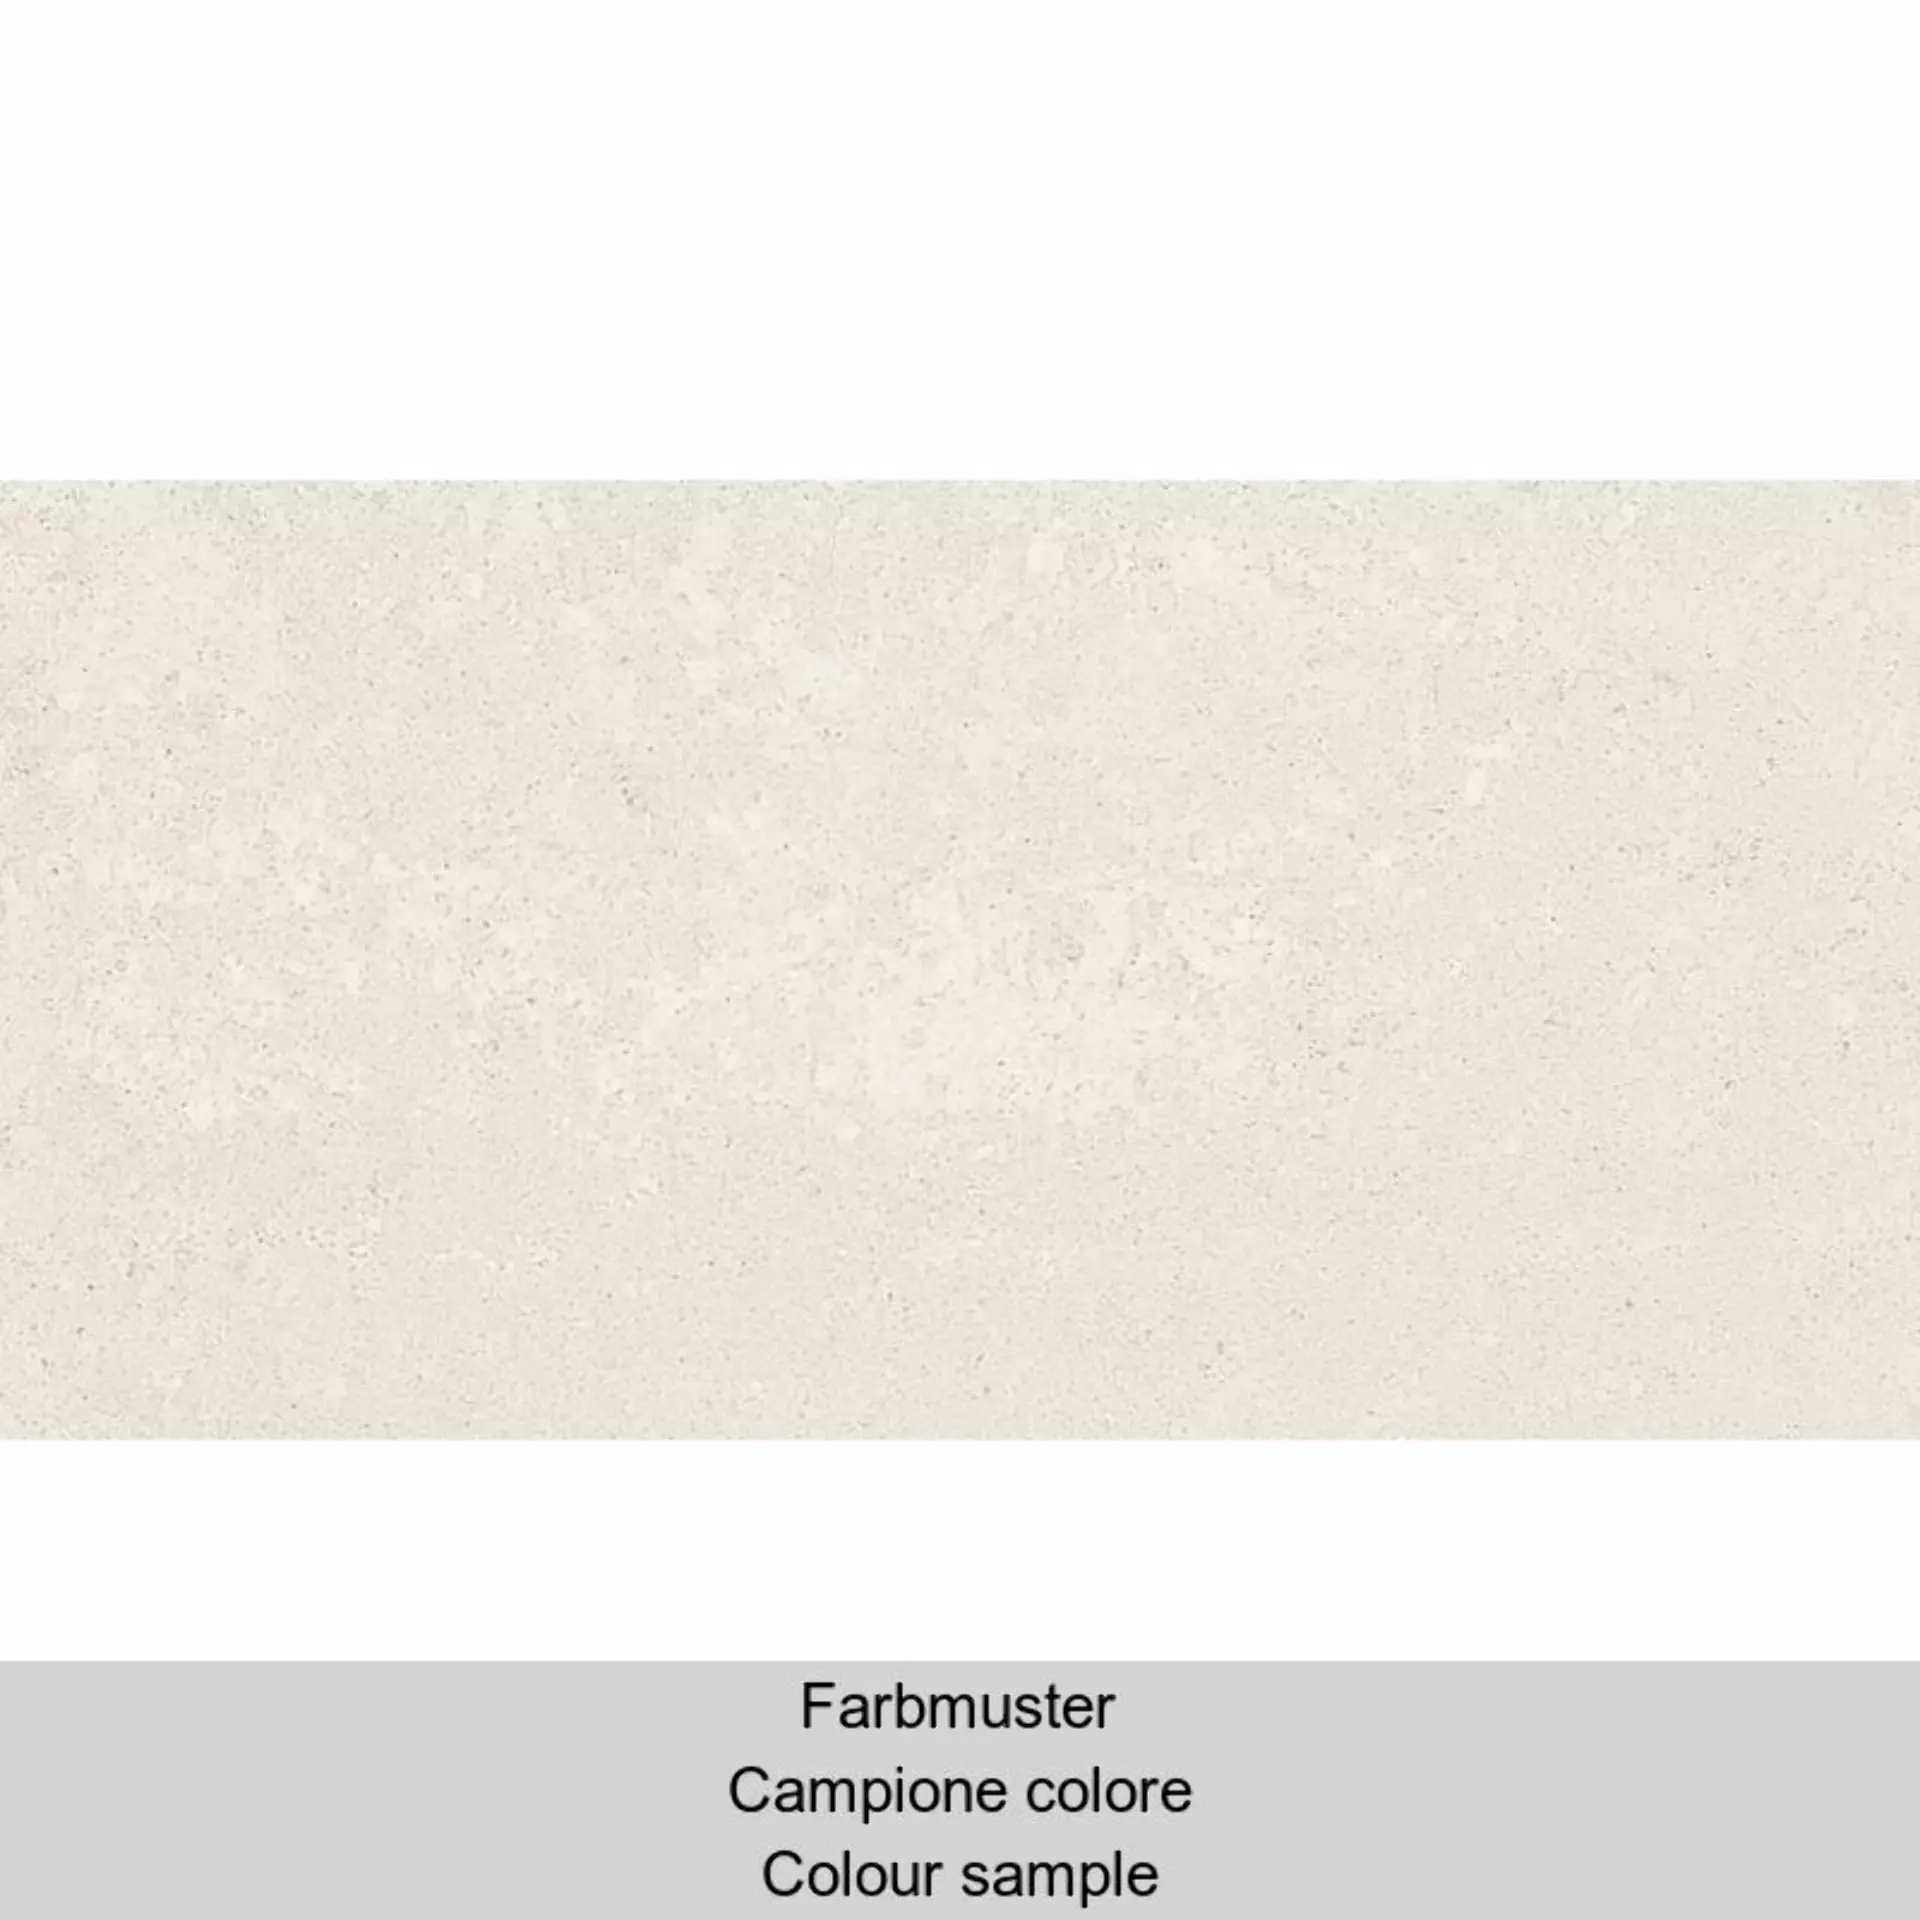 Casalgrande Marte Thassos Naturale – Matt – Antibacterial 6795714 30x60cm rectified 9,4mm